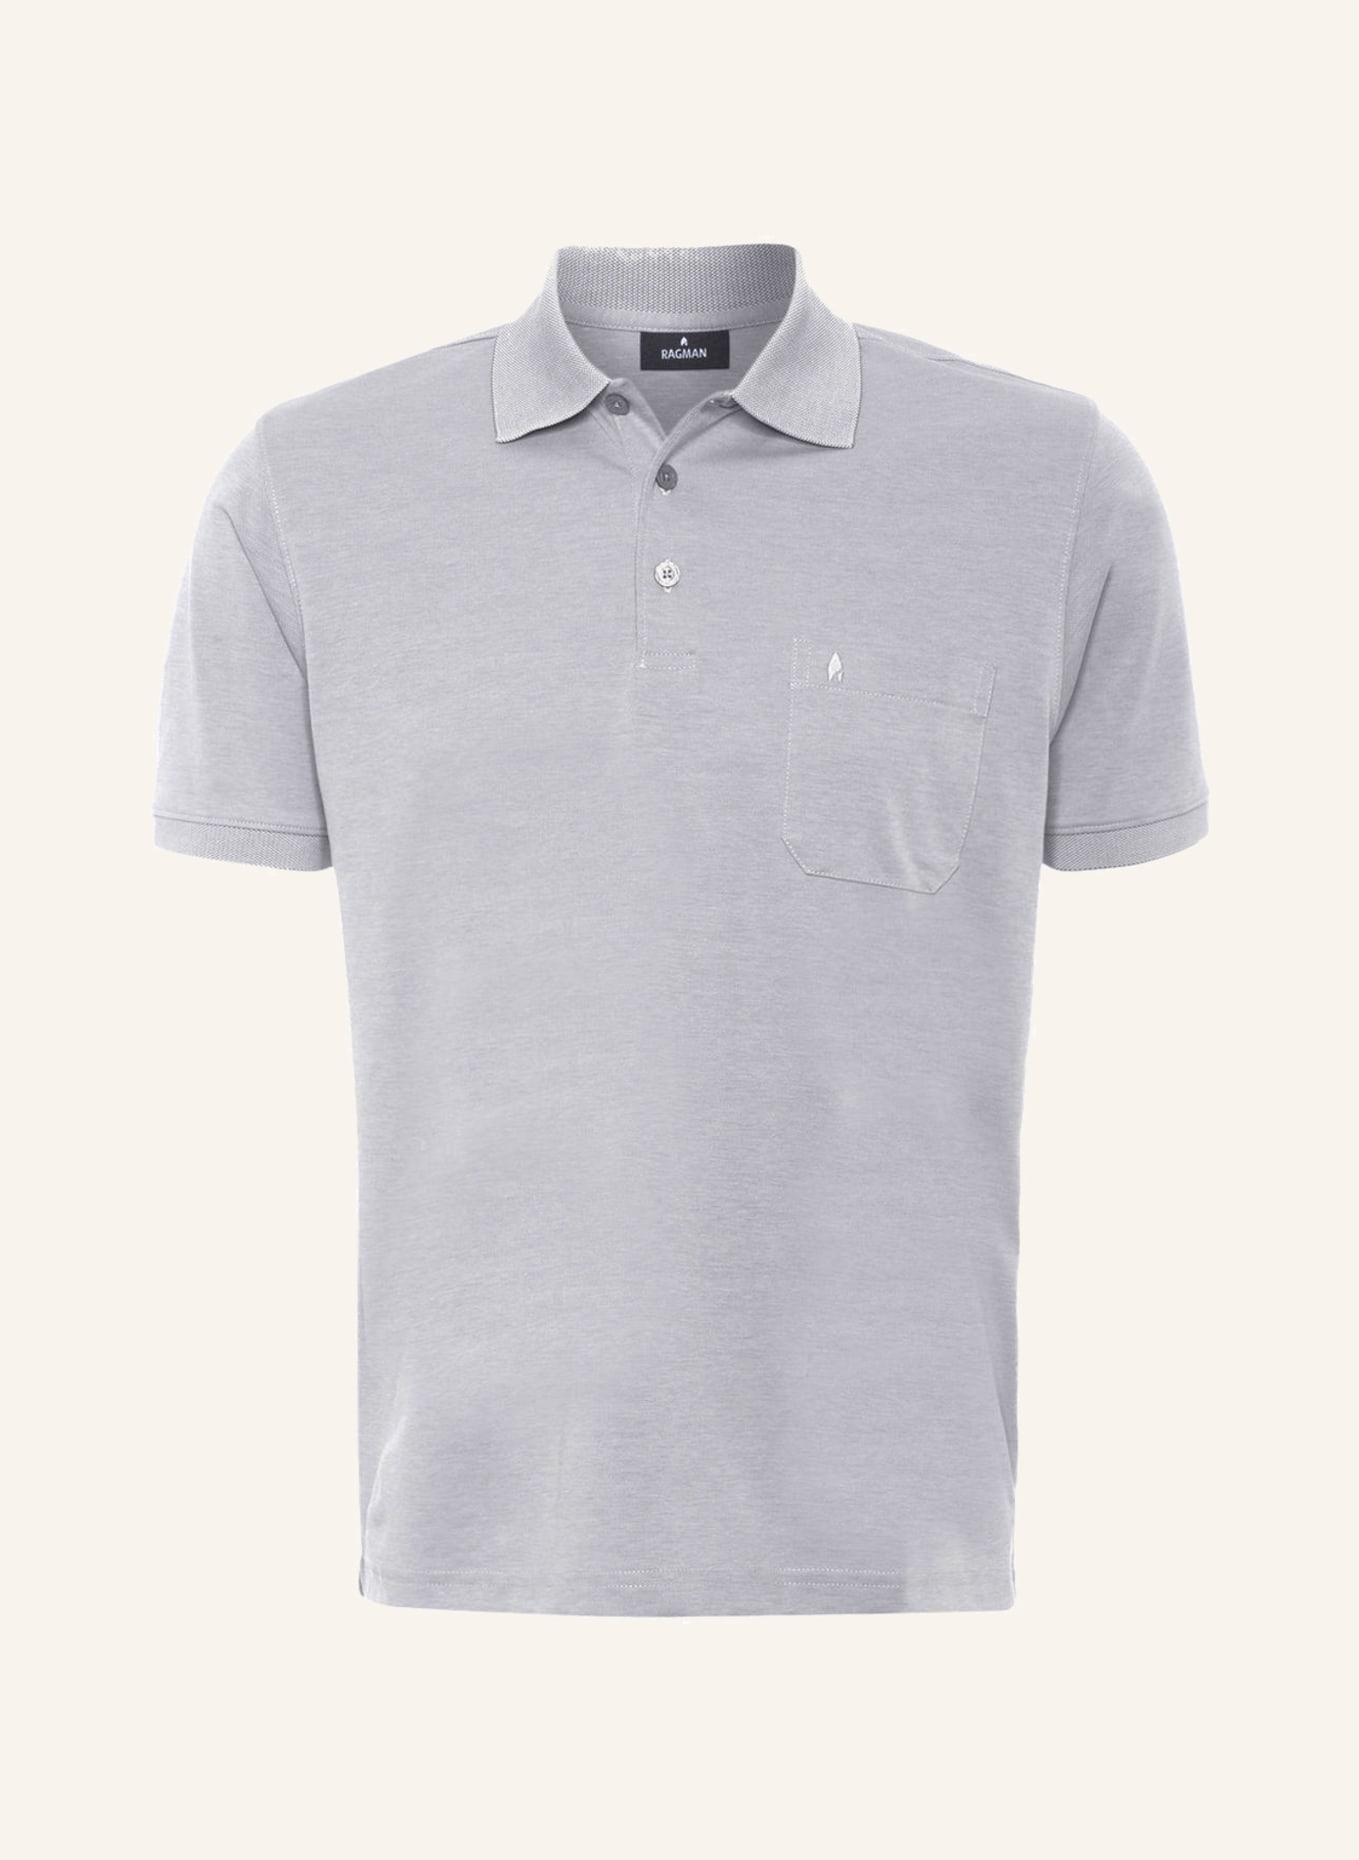 RAGMAN Piqué-Poloshirt , Farbe: GRAU (Bild 1)